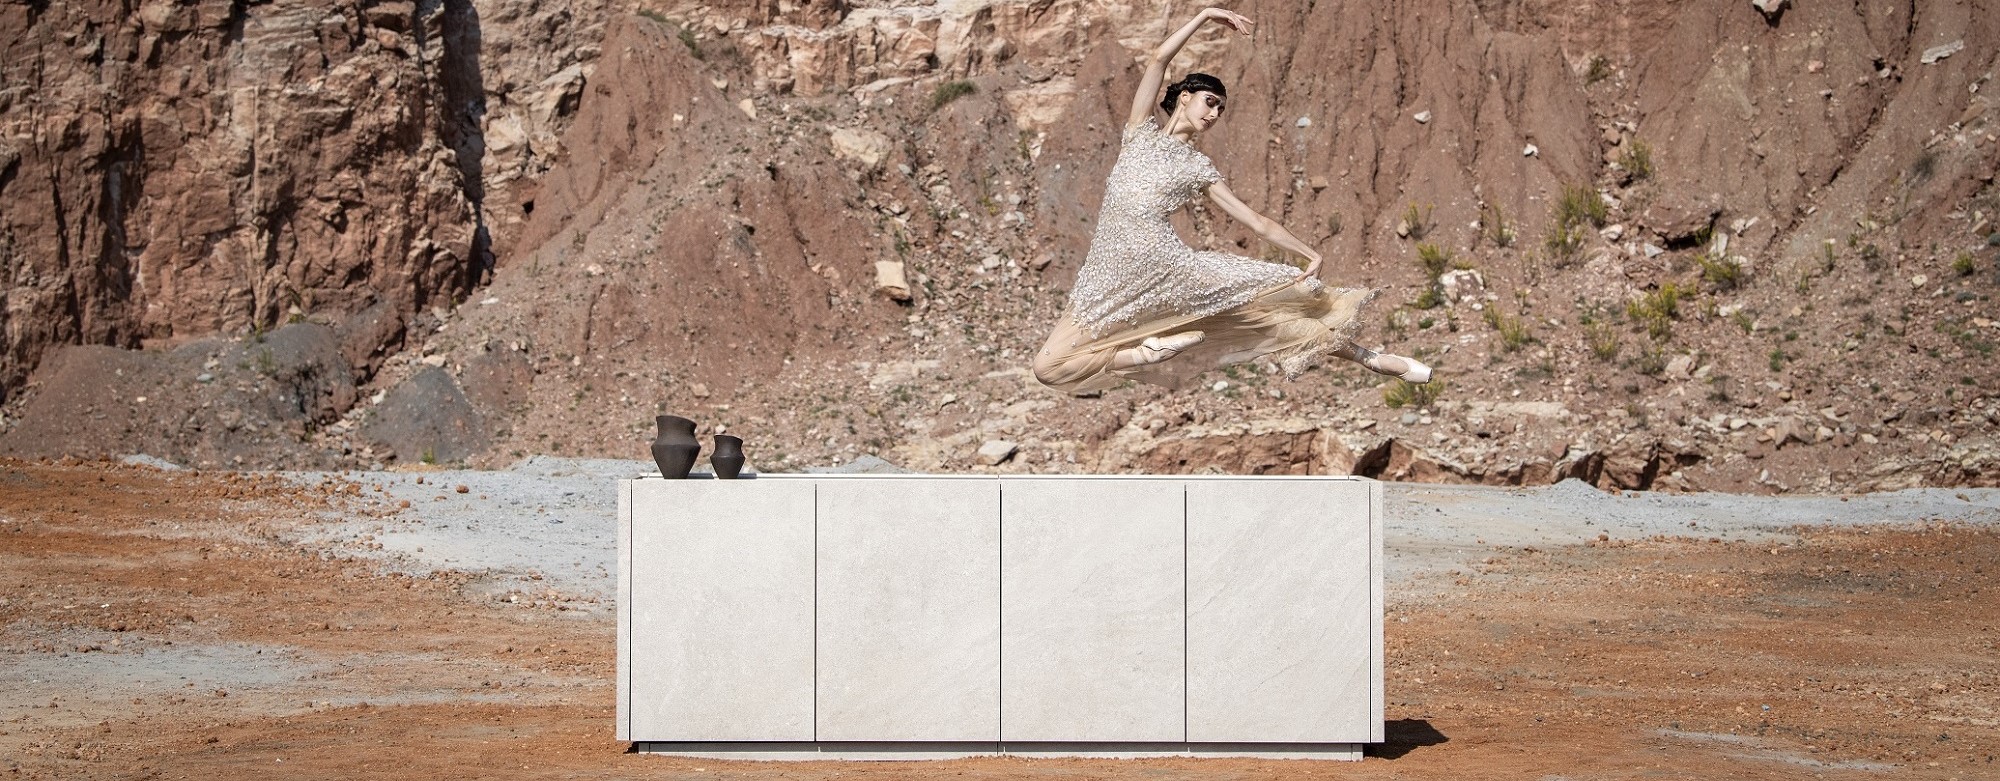 Un diseño monolítico de la cocina exterior que representa el paradigma del minimalismo